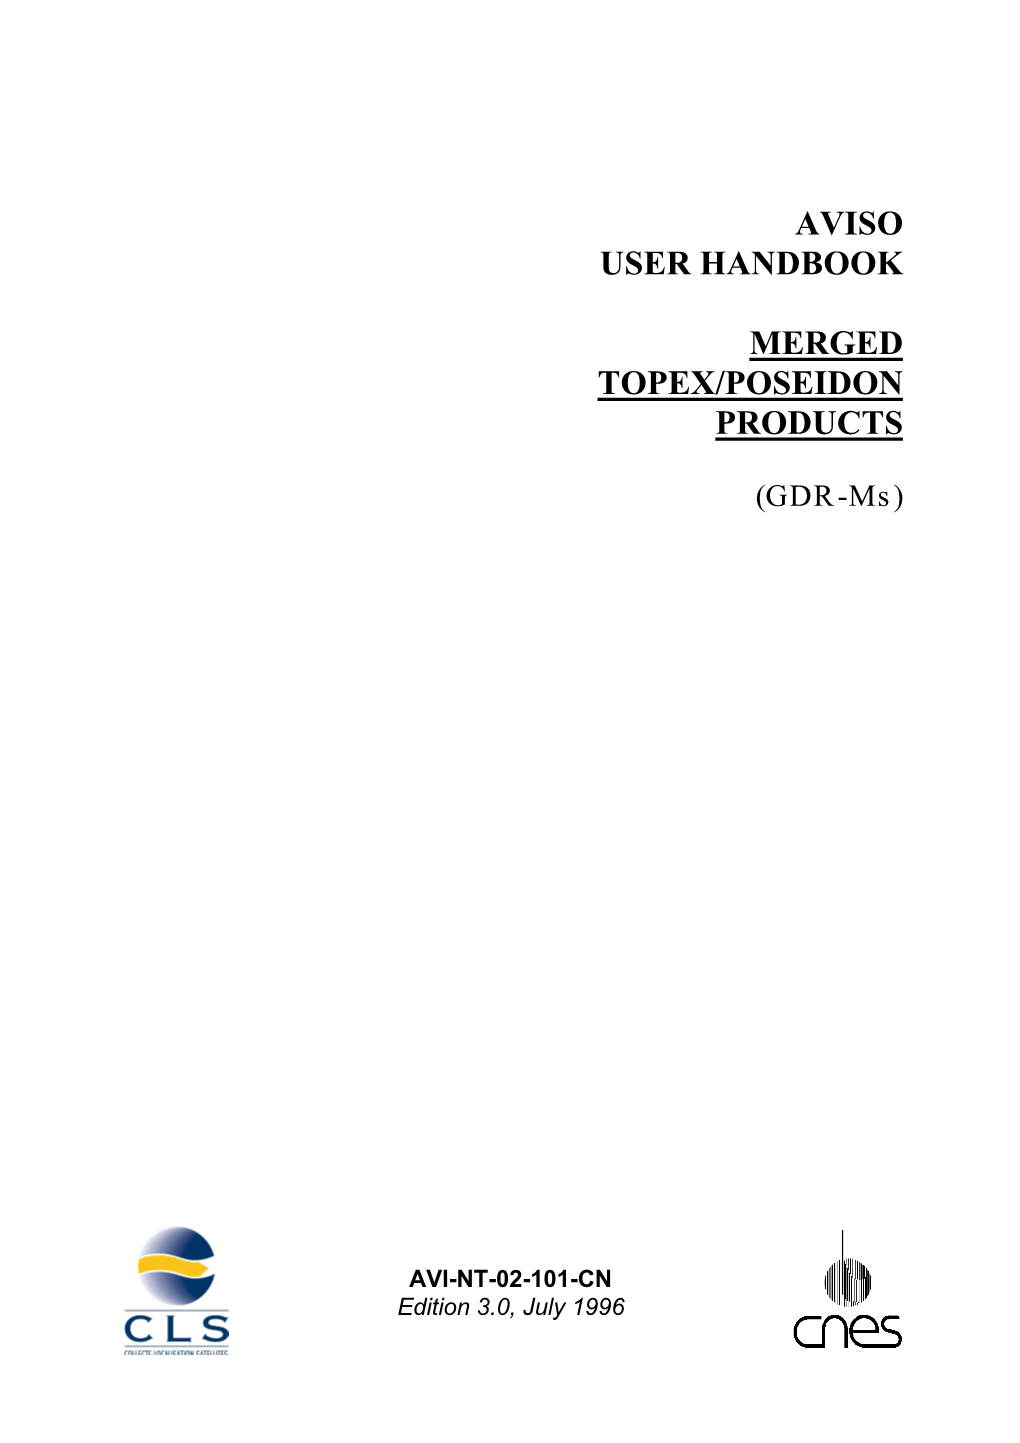 Aviso User Handbook: Merged Topex/Poseidon